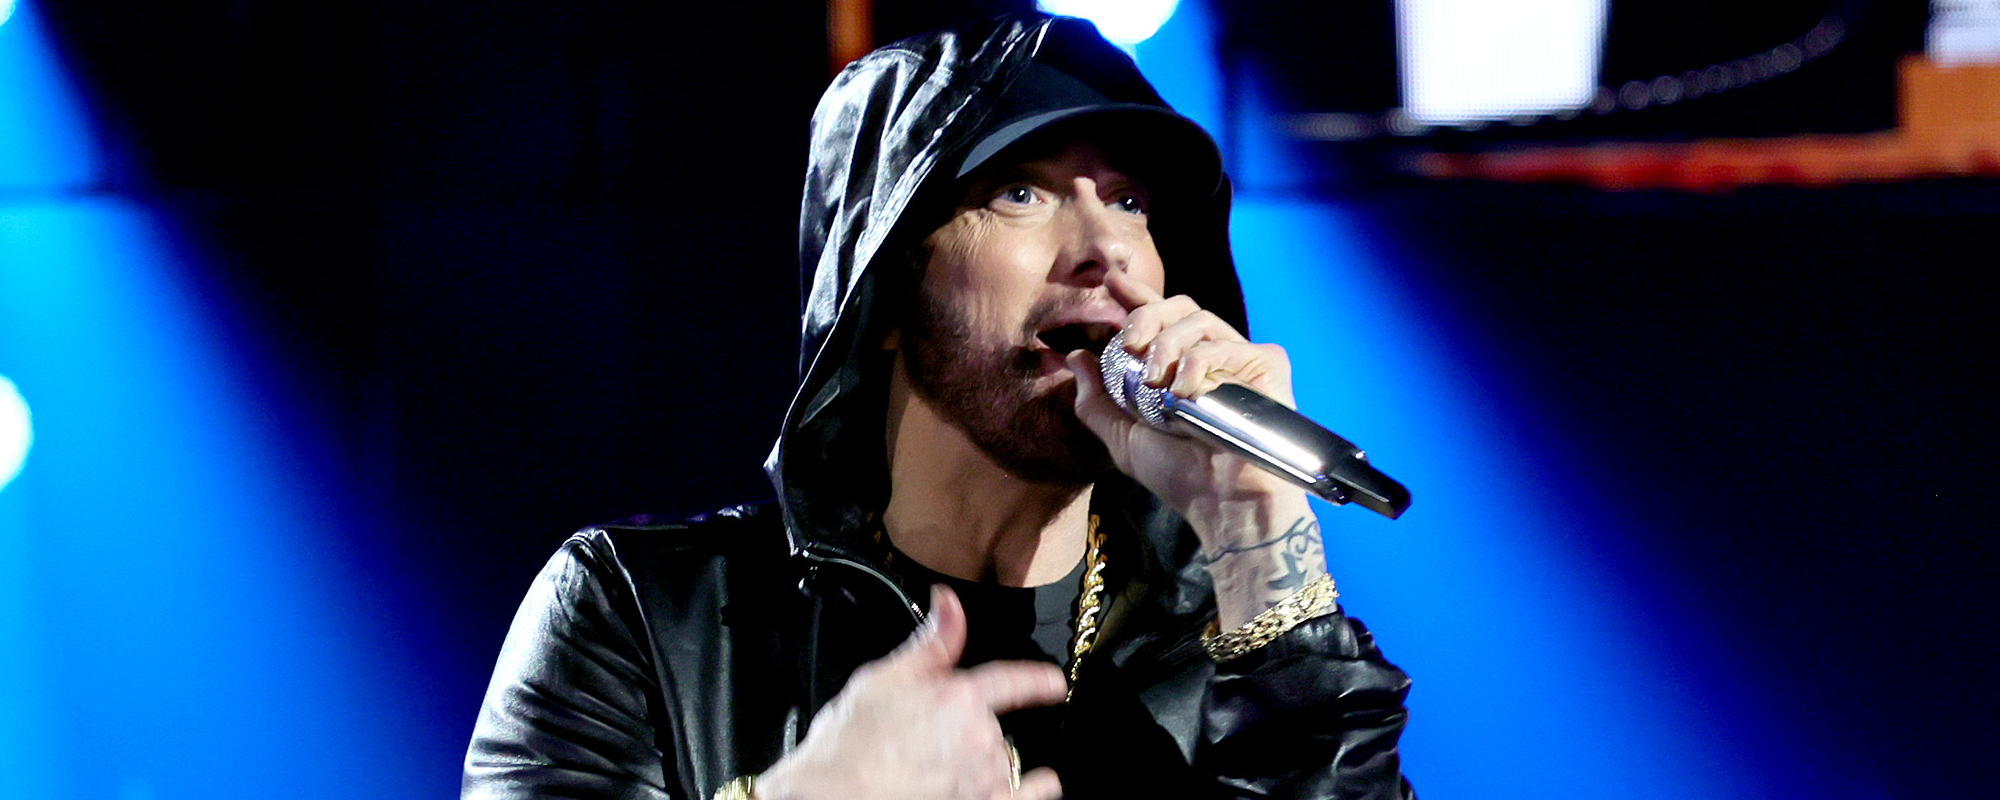 Fans Upset After Eminem Pulls “Cruel” April Fools Joke Surrounding New Album